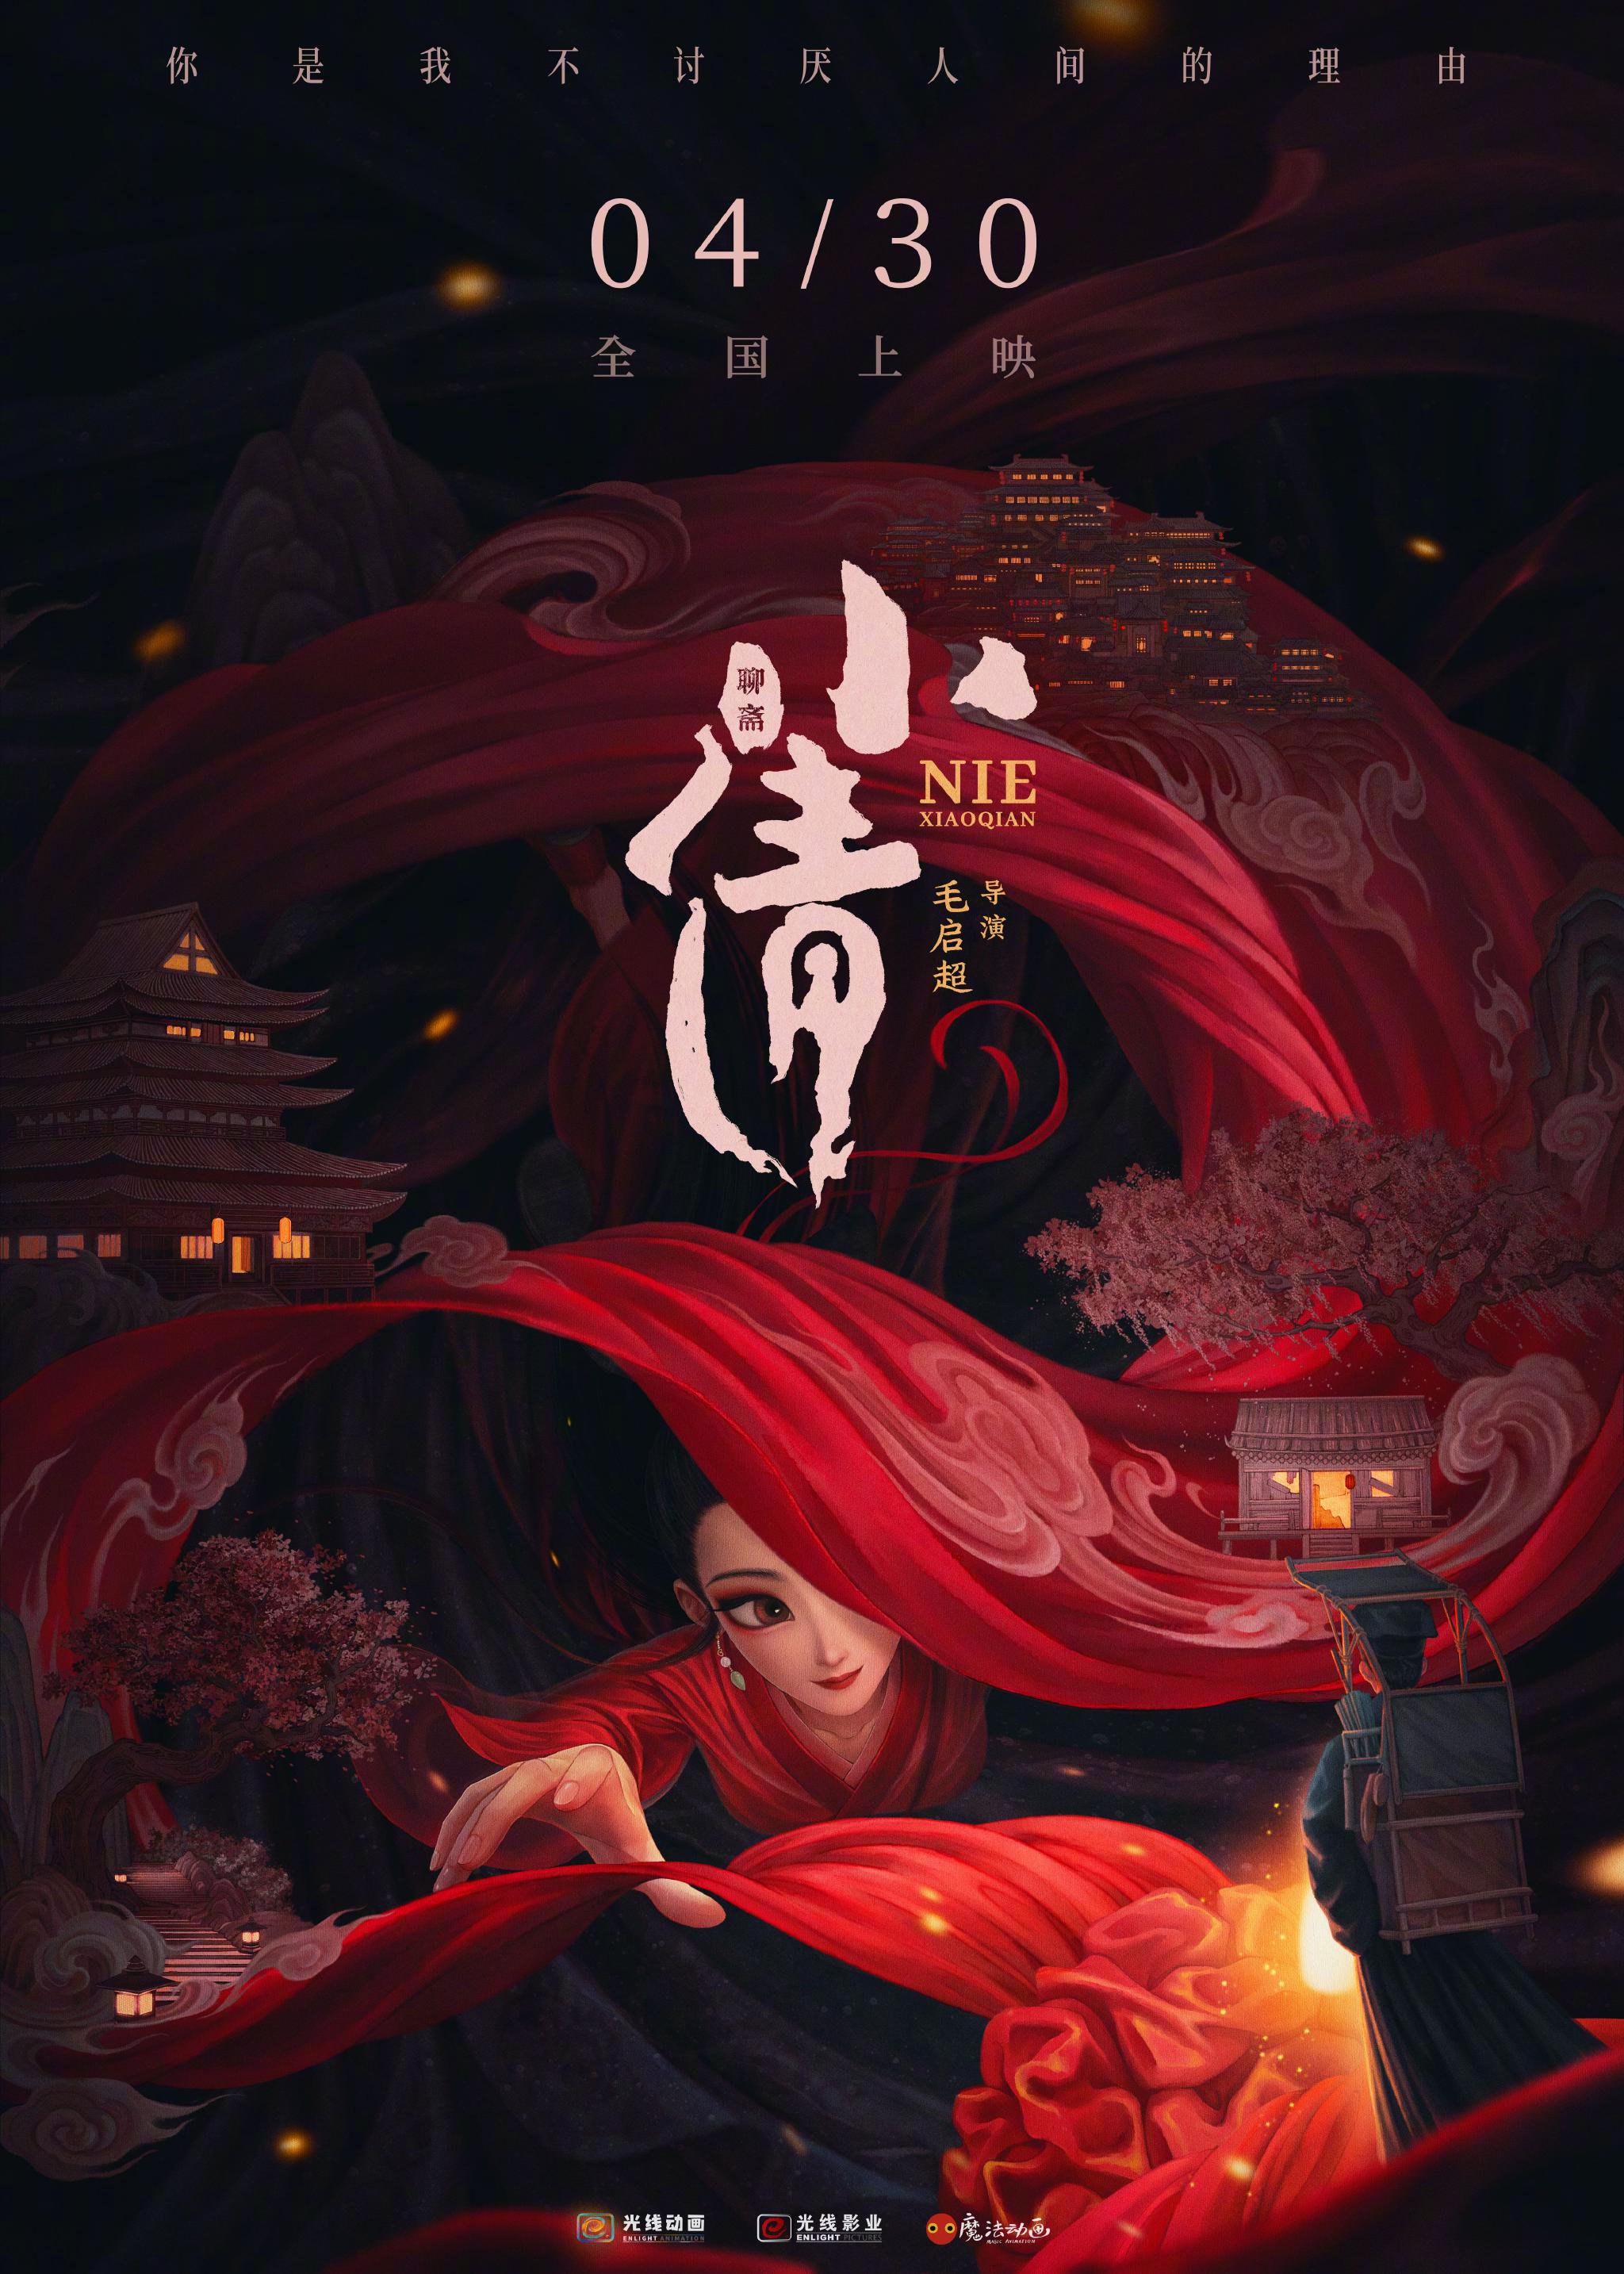 動畫電影《小倩》發佈定檔海報。